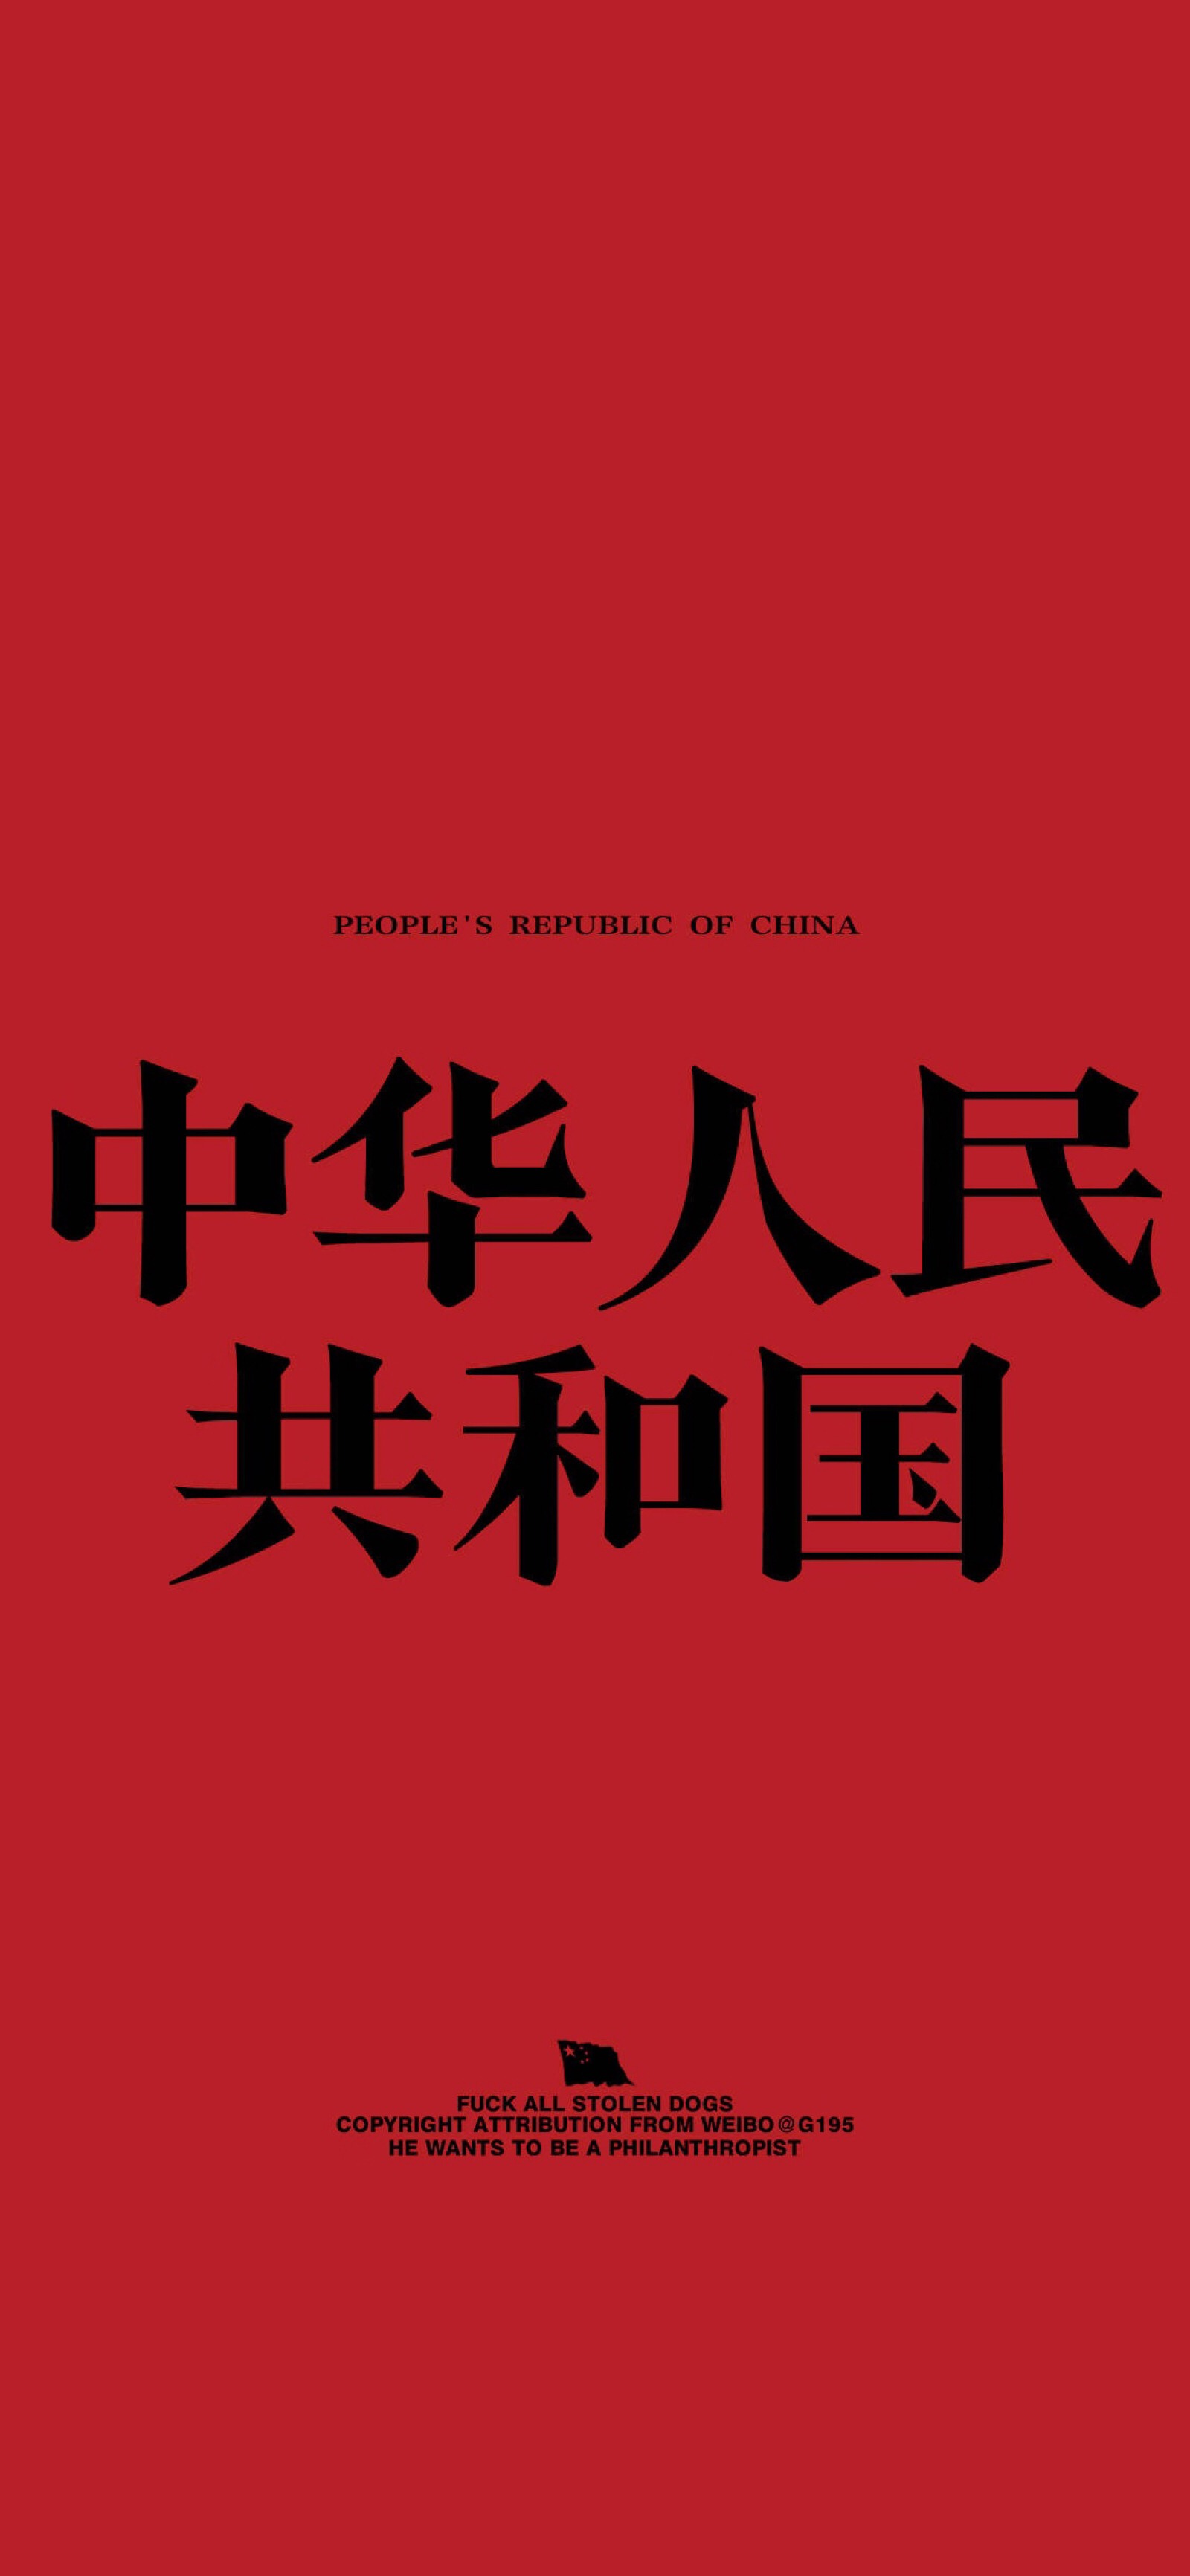 china艺术字体图片